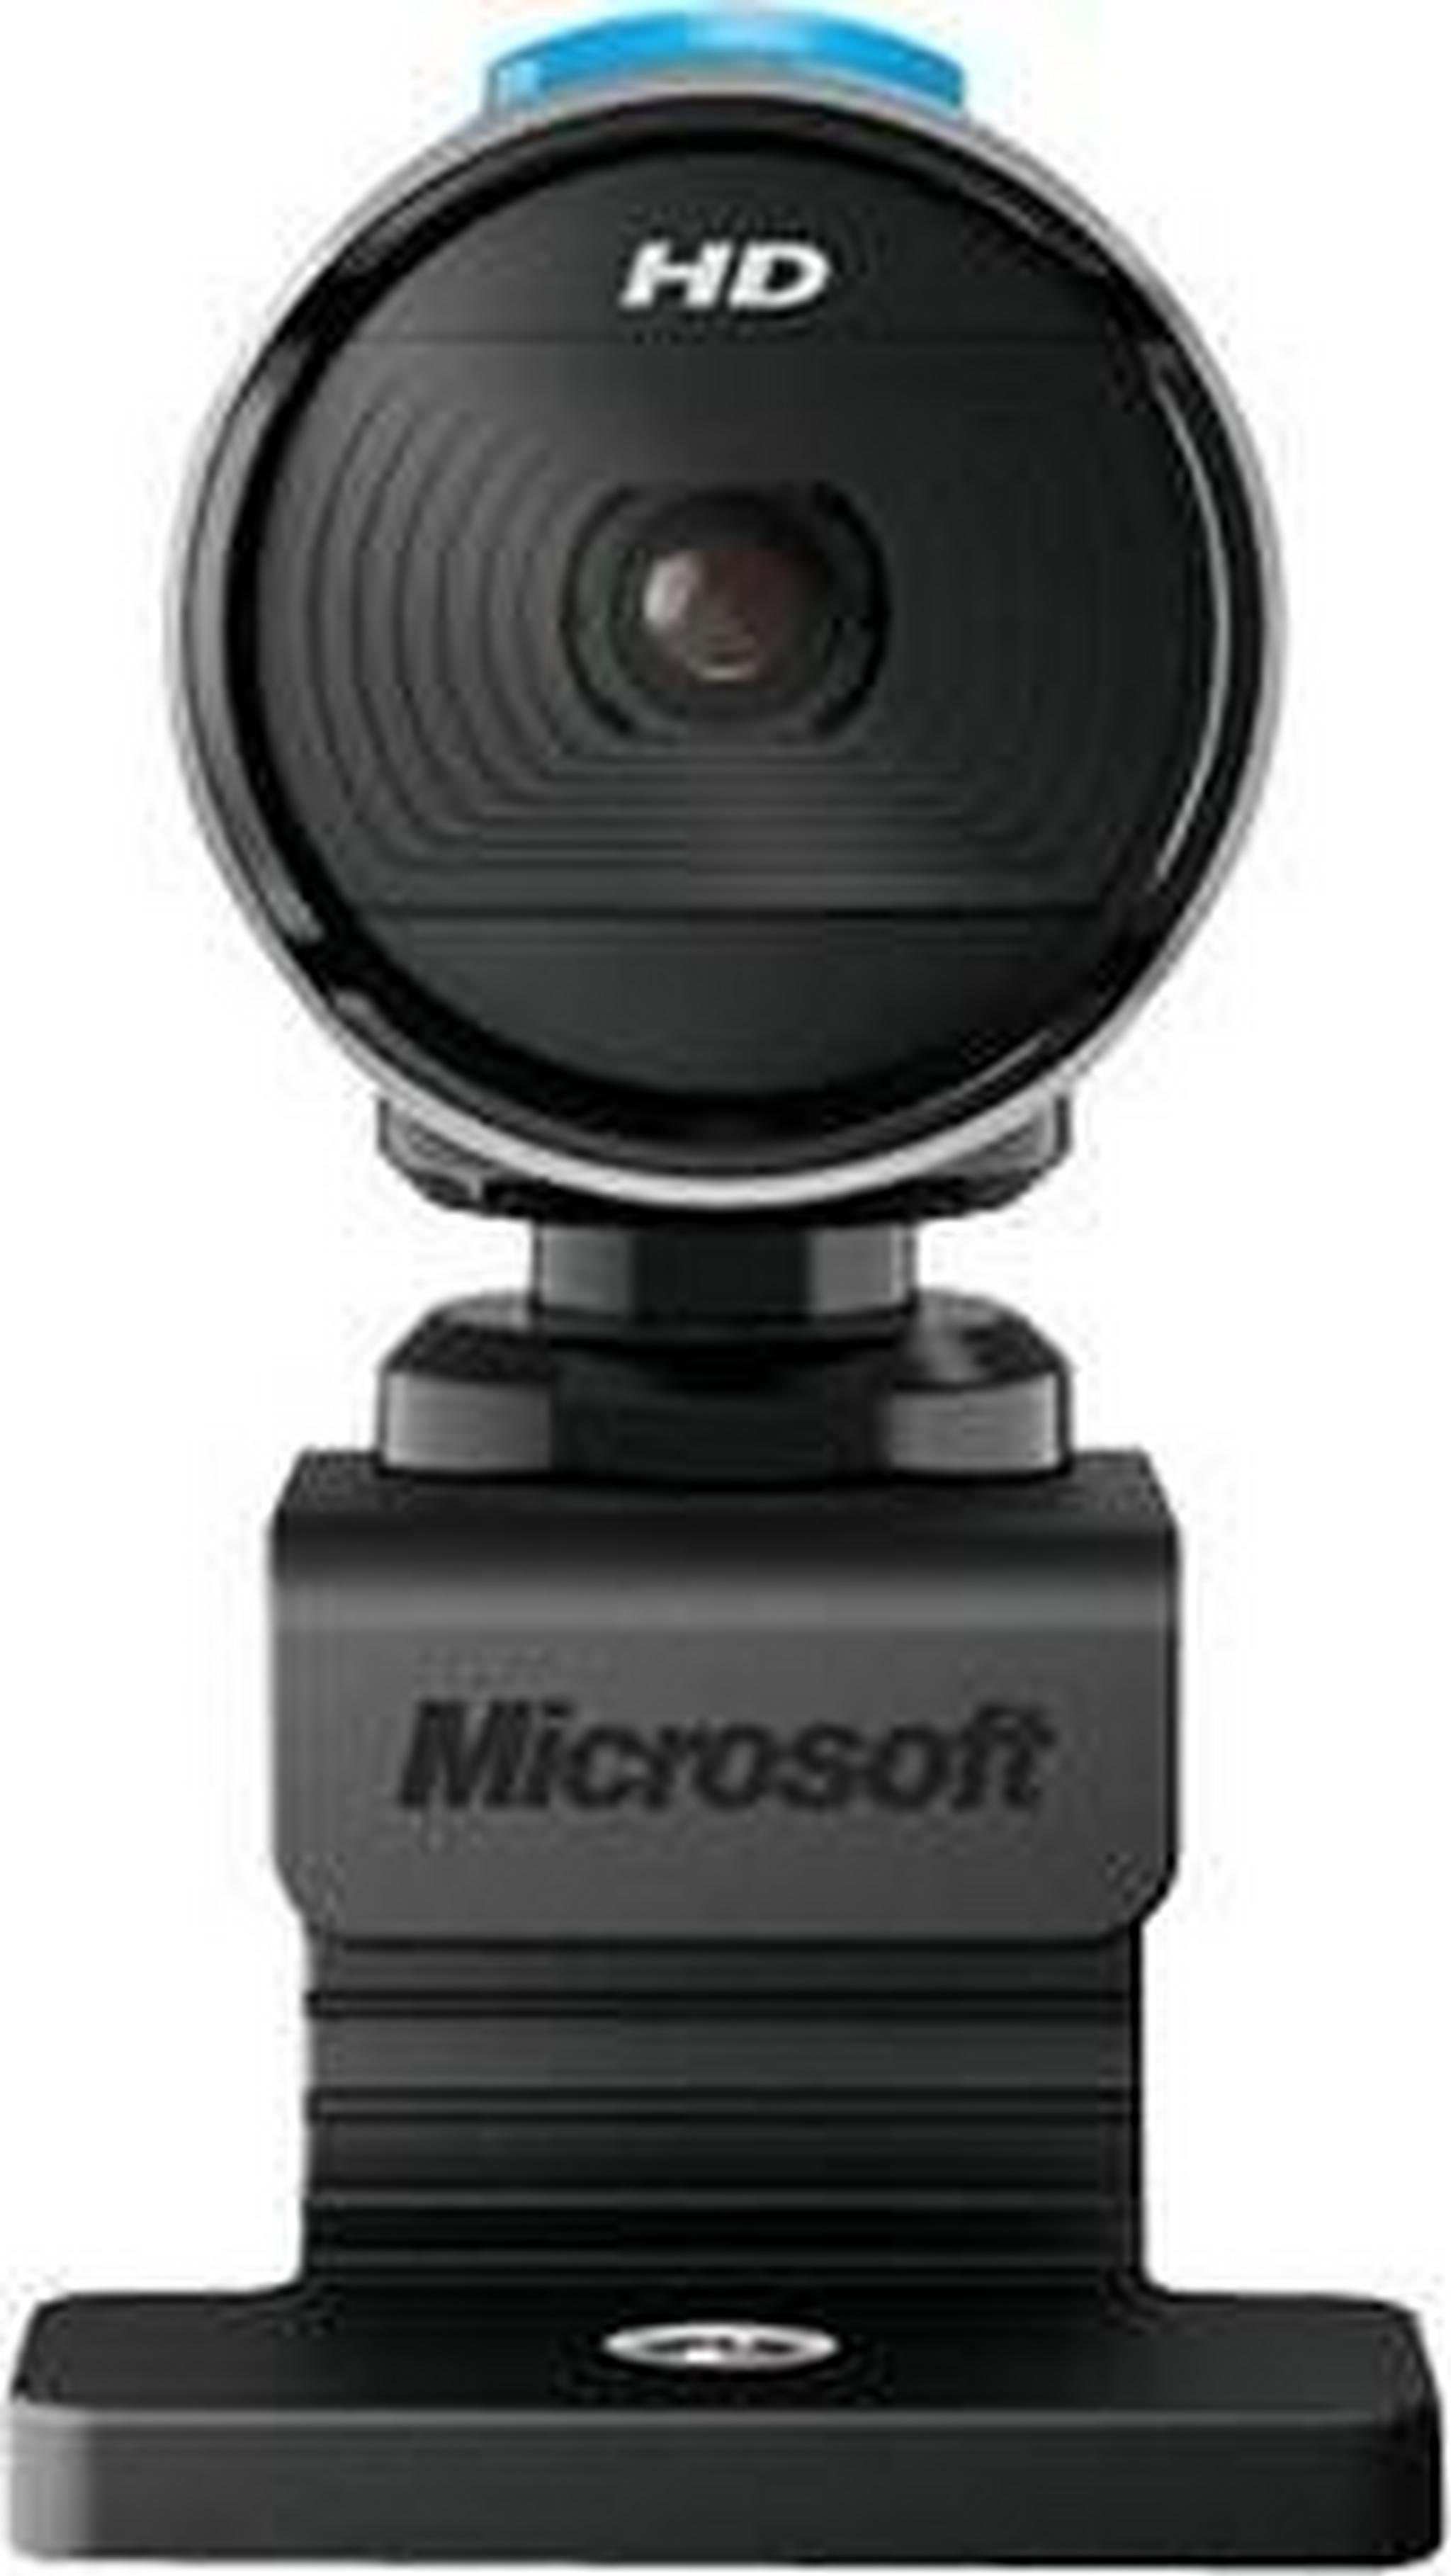 كاميرا لايف استوديو من ميكروسوفت - اللون الأسود